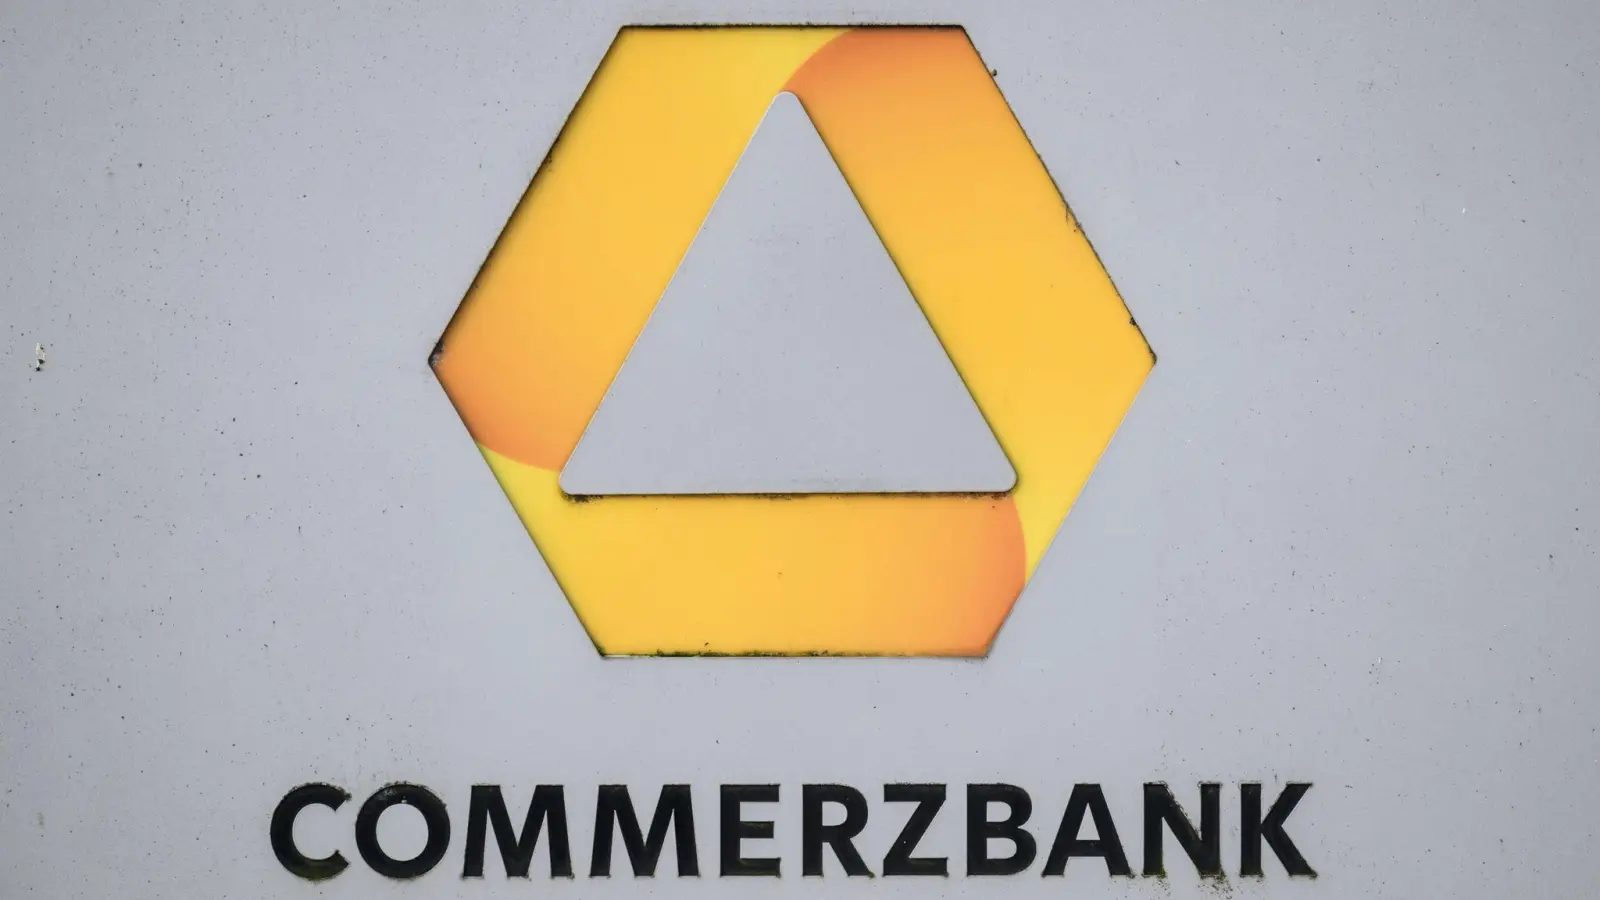 Die Commerzbank will nach zwei profitablen Jahren in Folge zurück in den Dax. (Foto: Robert Michael/dpa)